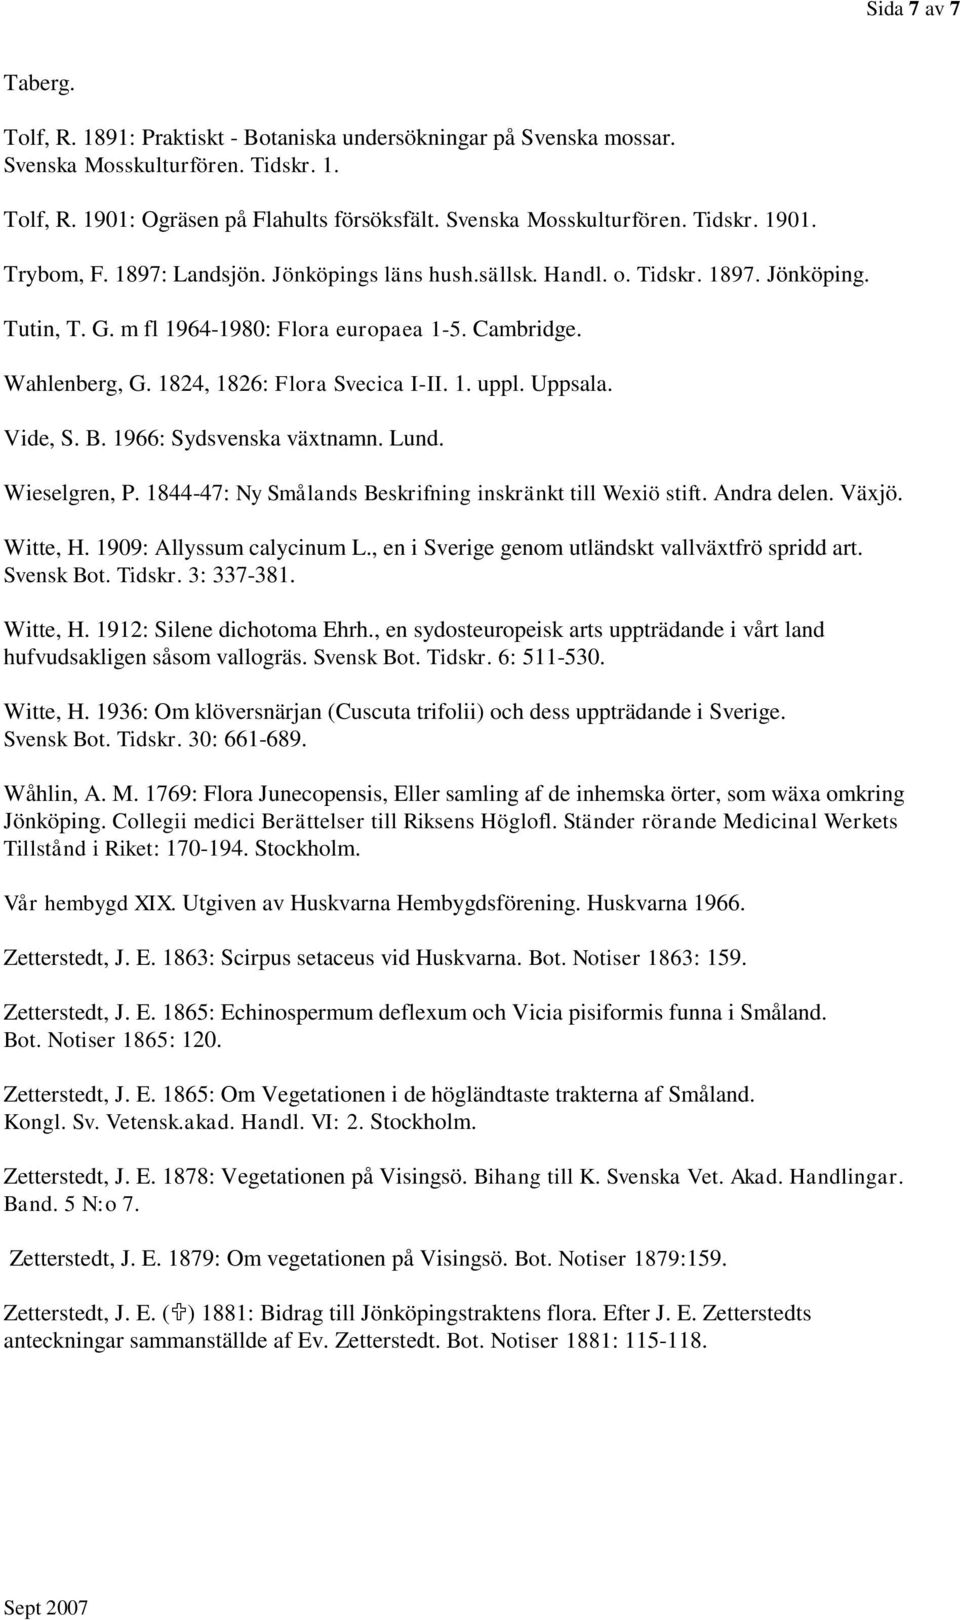 Uppsala. Vide, S. B. 1966: Sydsvenska växtnamn. Lund. Wieselgren, P. 1844-47: Ny Smålands Beskrifning inskränkt till Wexiö stift. Andra delen. Växjö. Witte, H. 1909: Allyssum calycinum L.